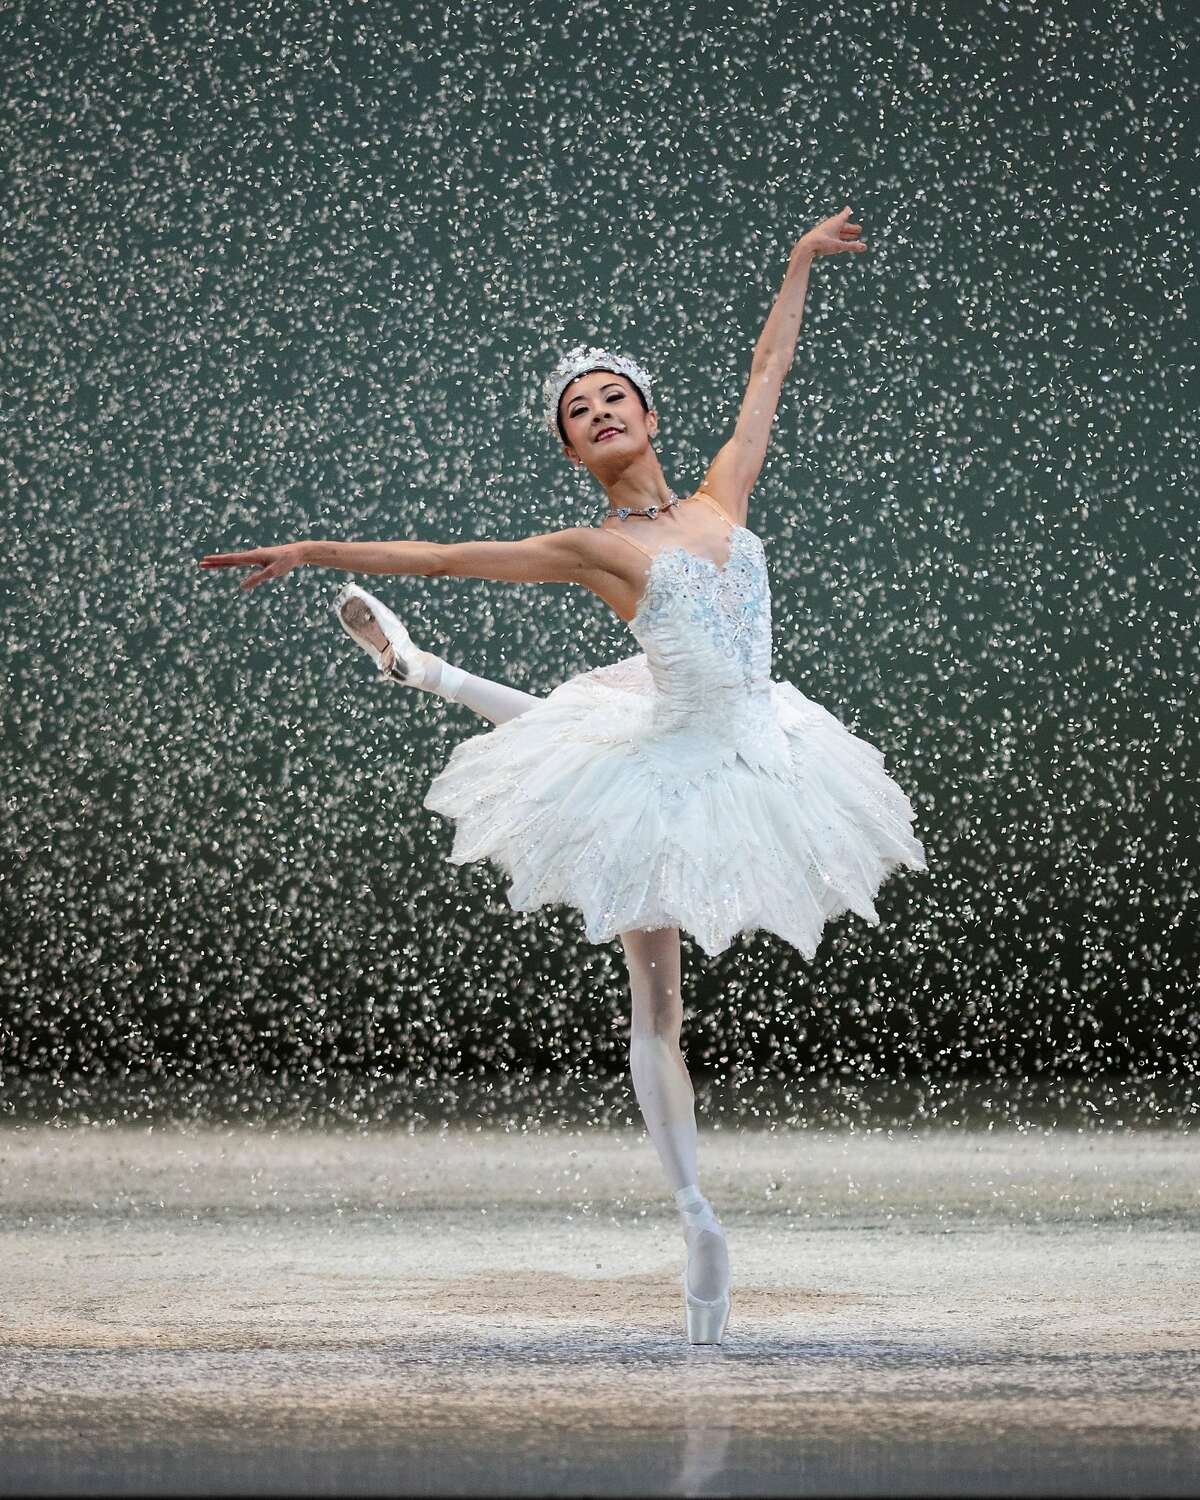 Yuan Yuan Tan performs as the Snow Queen in the San Francisco Ballet’s virtual “Nutcracker.”